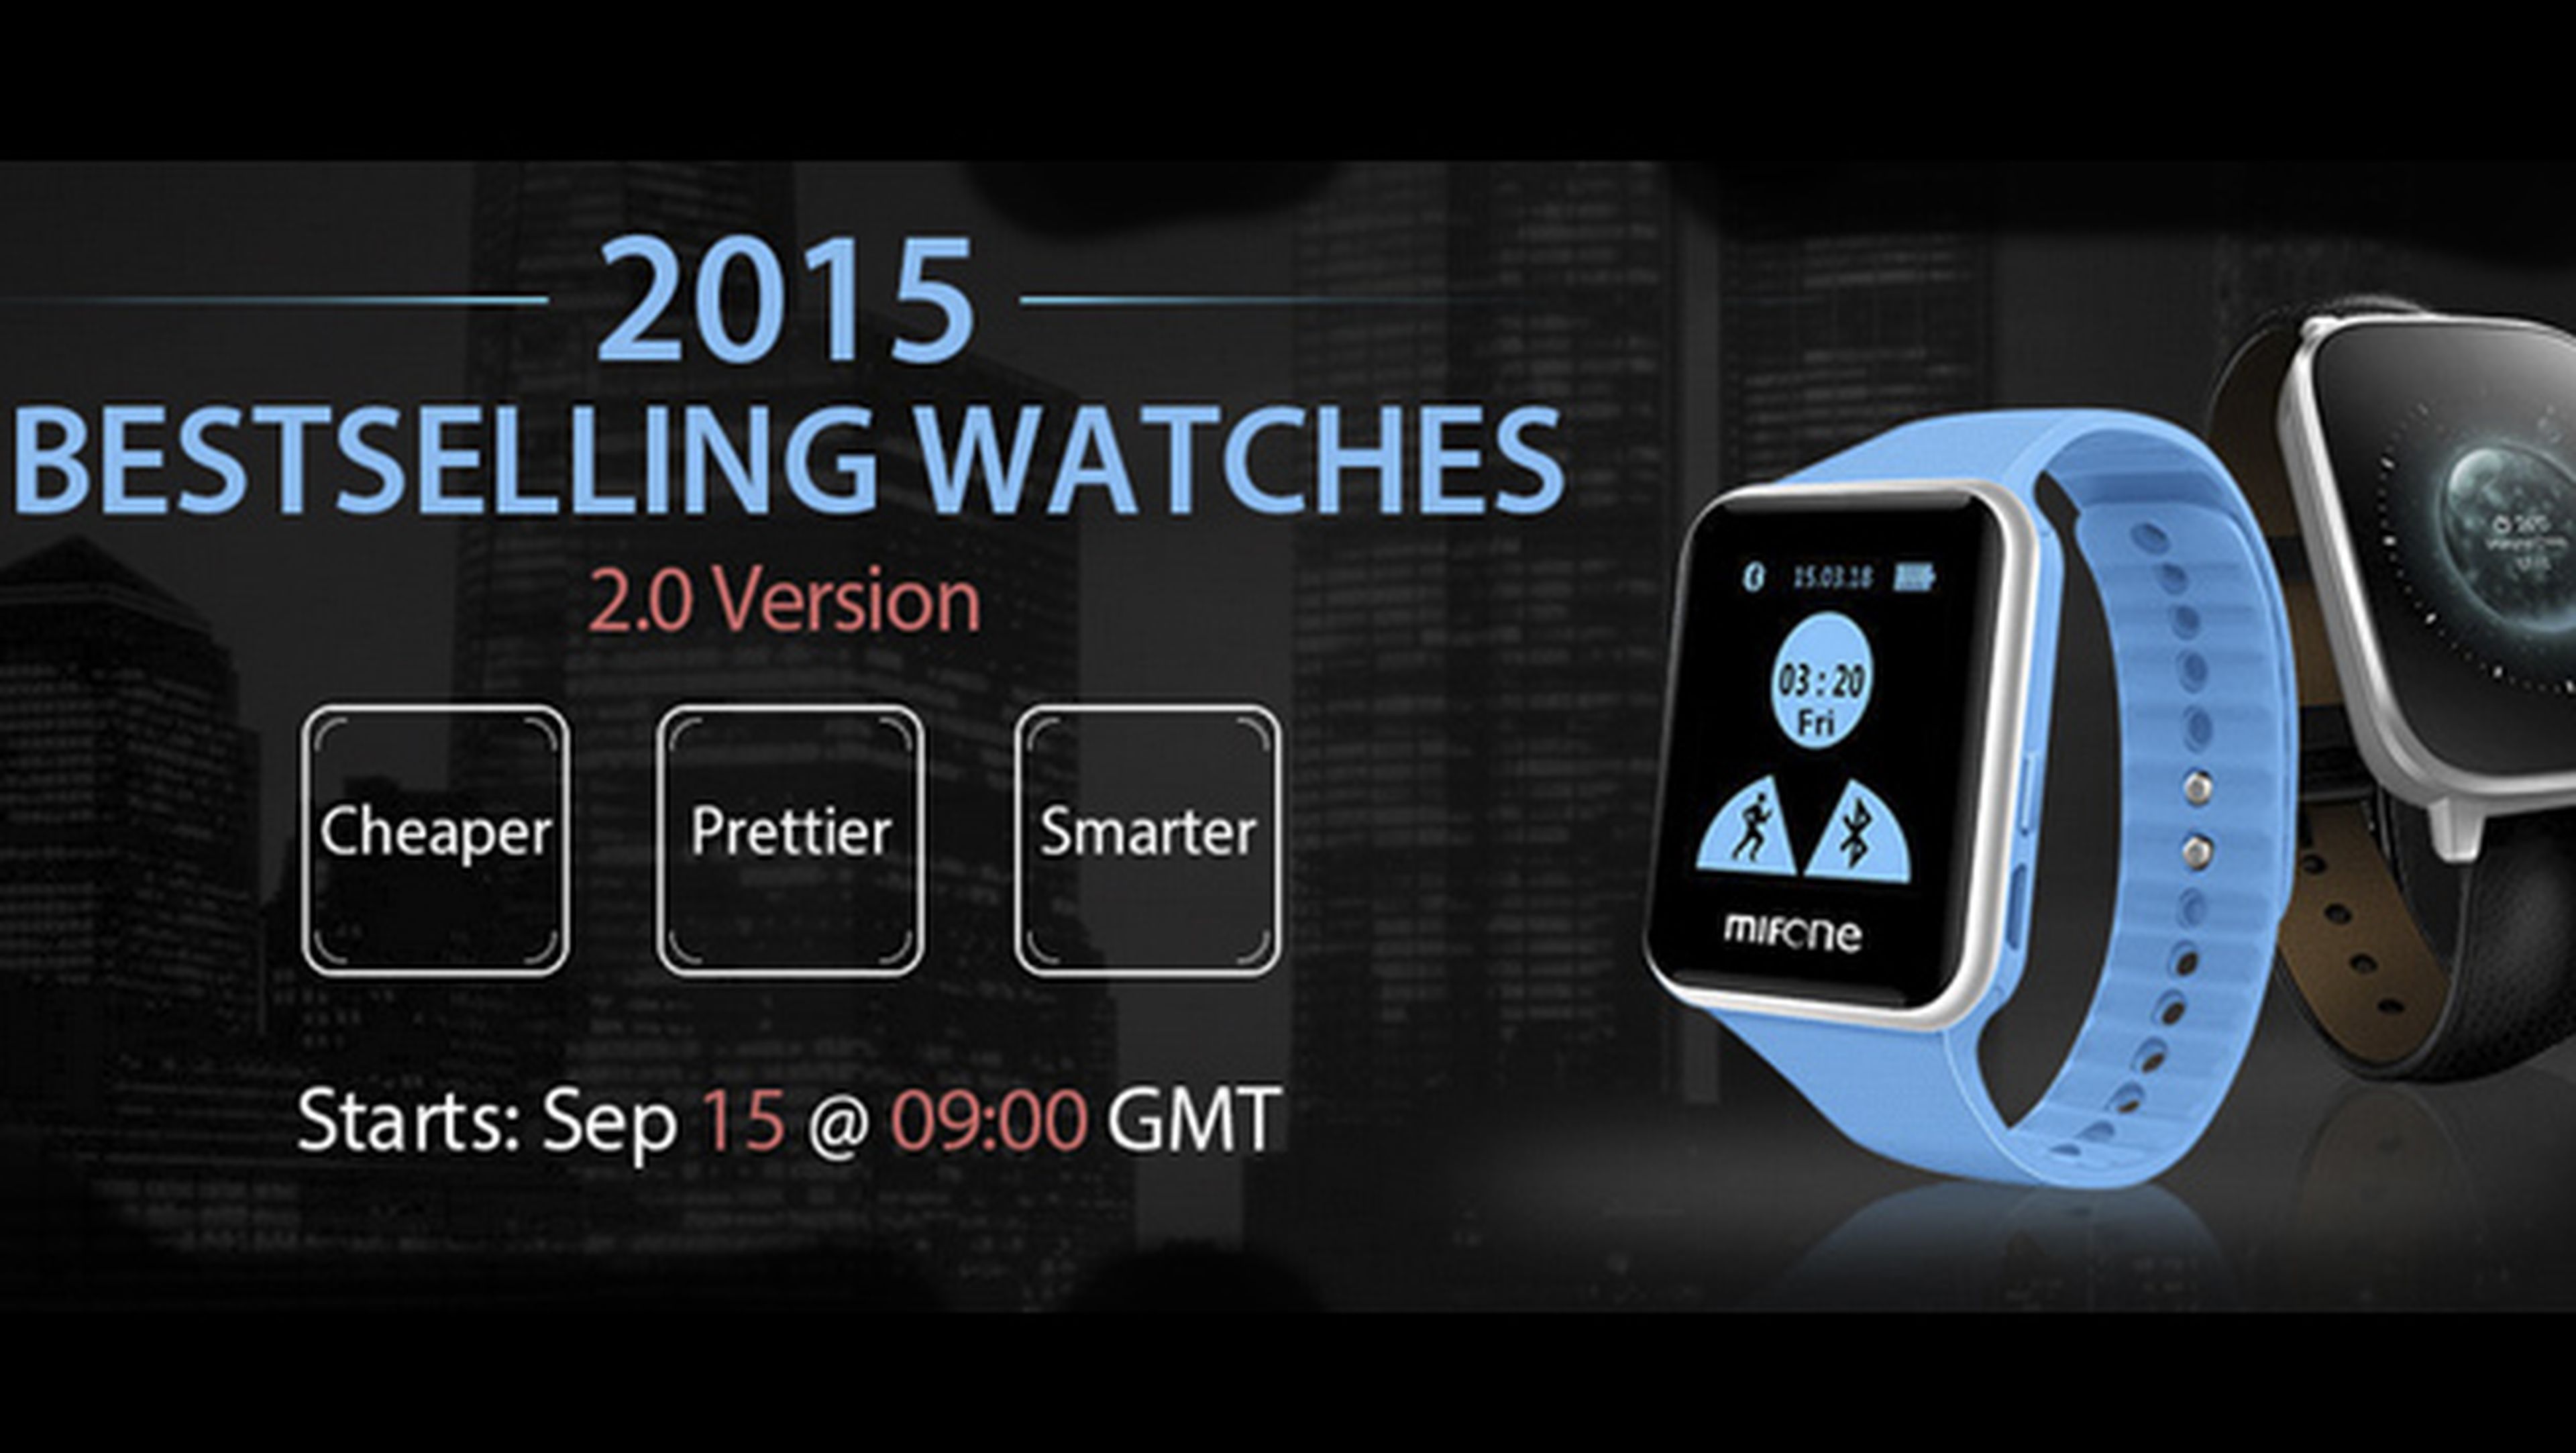 ¿Buscas un smartwatch? Atento a la promoción de Everbuying